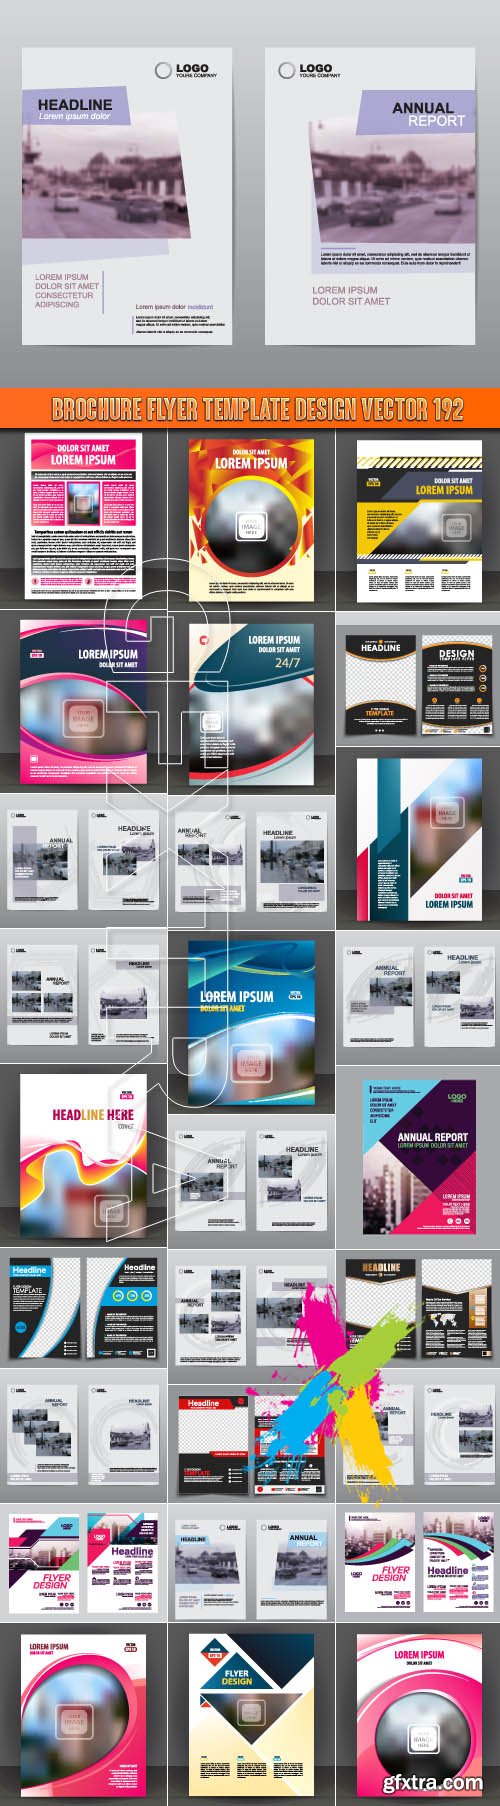 Brochure flyer template design vector 192